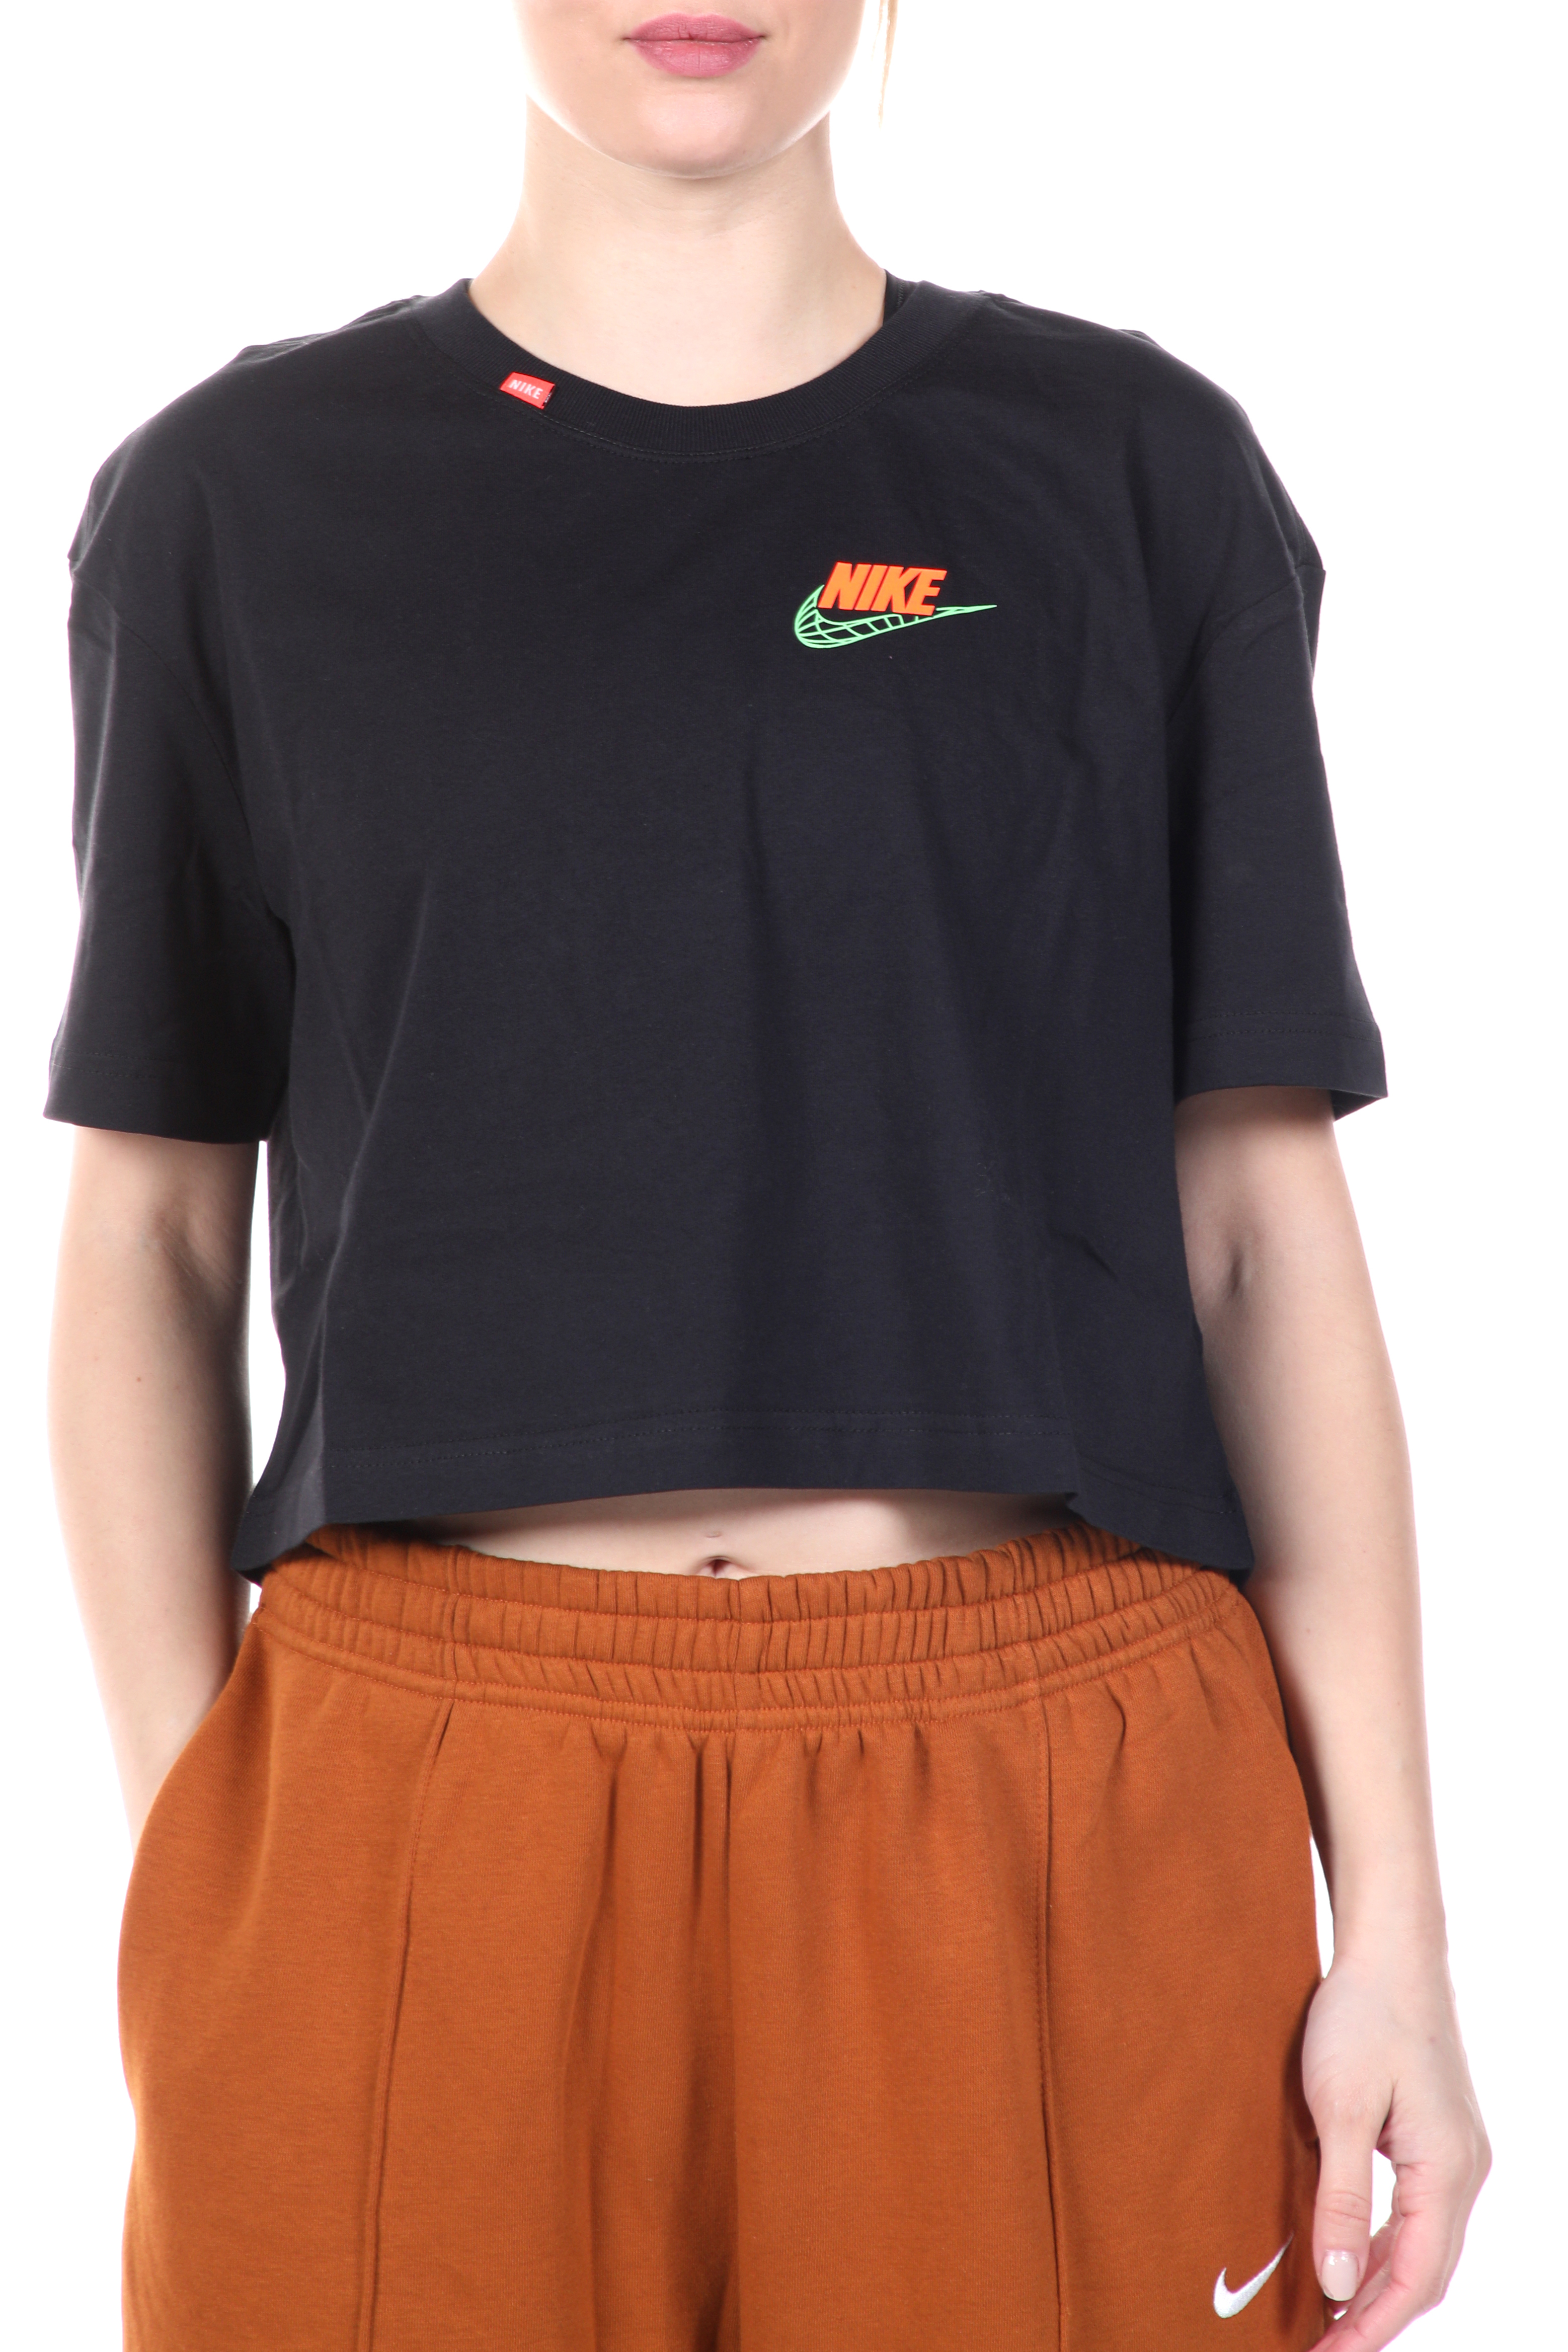 Γυναικεία/Ρούχα/Αθλητικά/T-shirt-Τοπ NIKE - Γυναικείο cropped top NIKE NSW TEE WORLDWIDE 2 CROP μαύρο